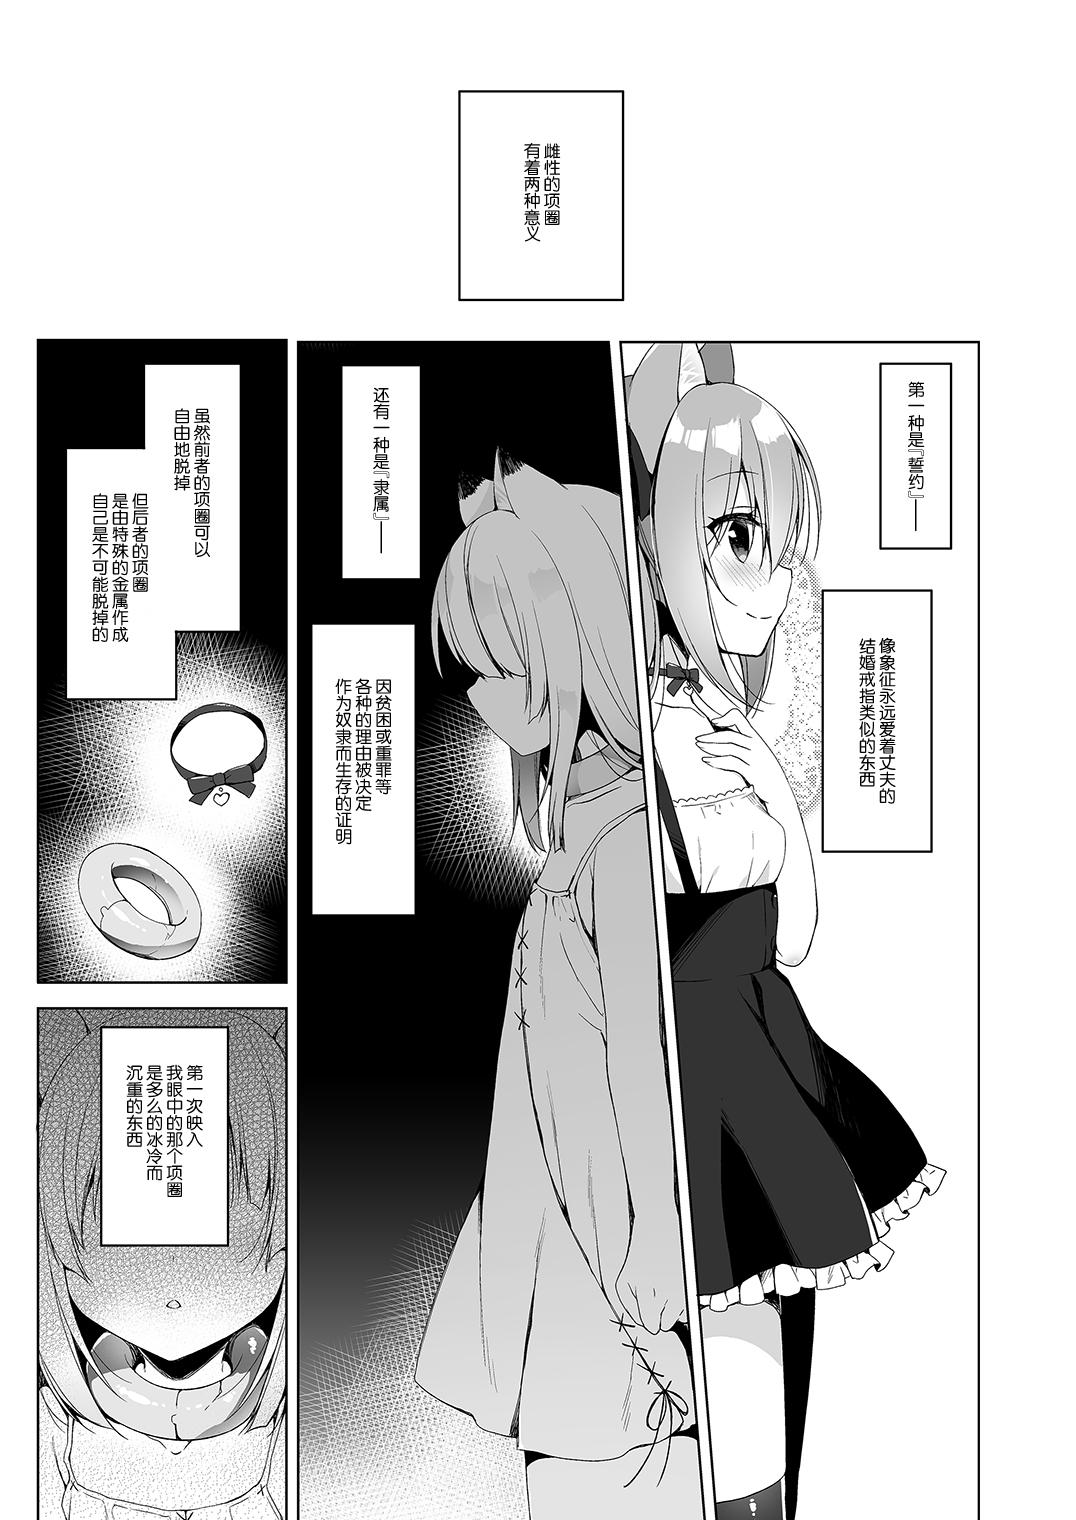 Nurumassage Boku no Risou no Isekai Seikatsu 3 | My Ideal Life in Another World 3 - Original Gets - Page 5